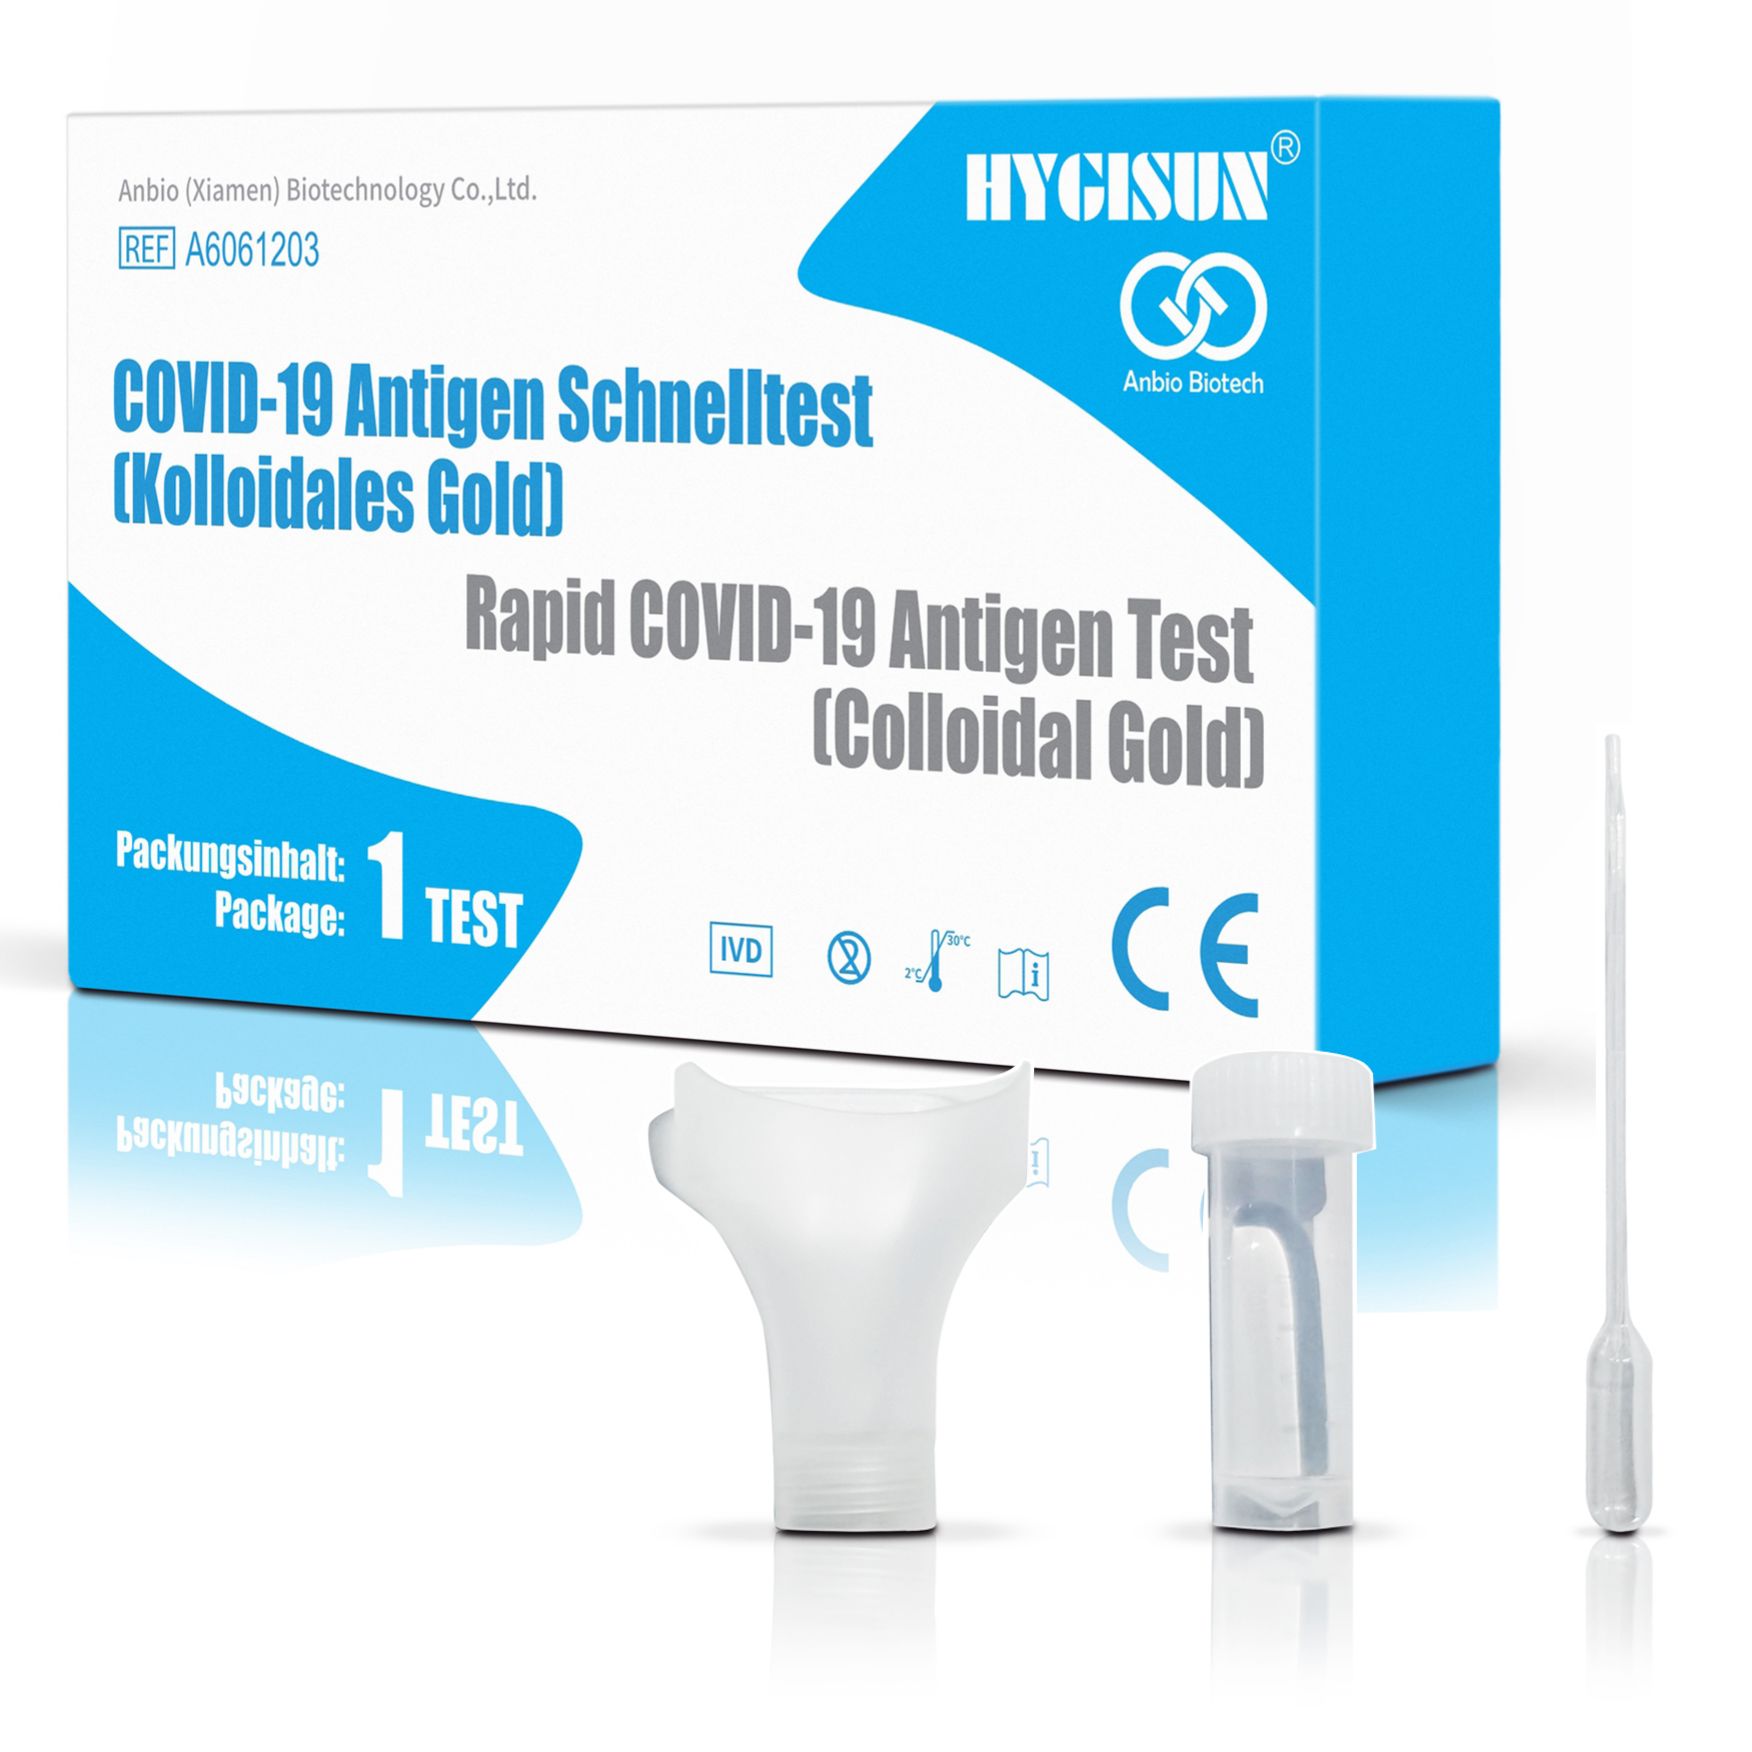 Hygisun Covid-19 Antigen Schnelltest Speicheltest Spucktest Selbsttest, 5er Pack